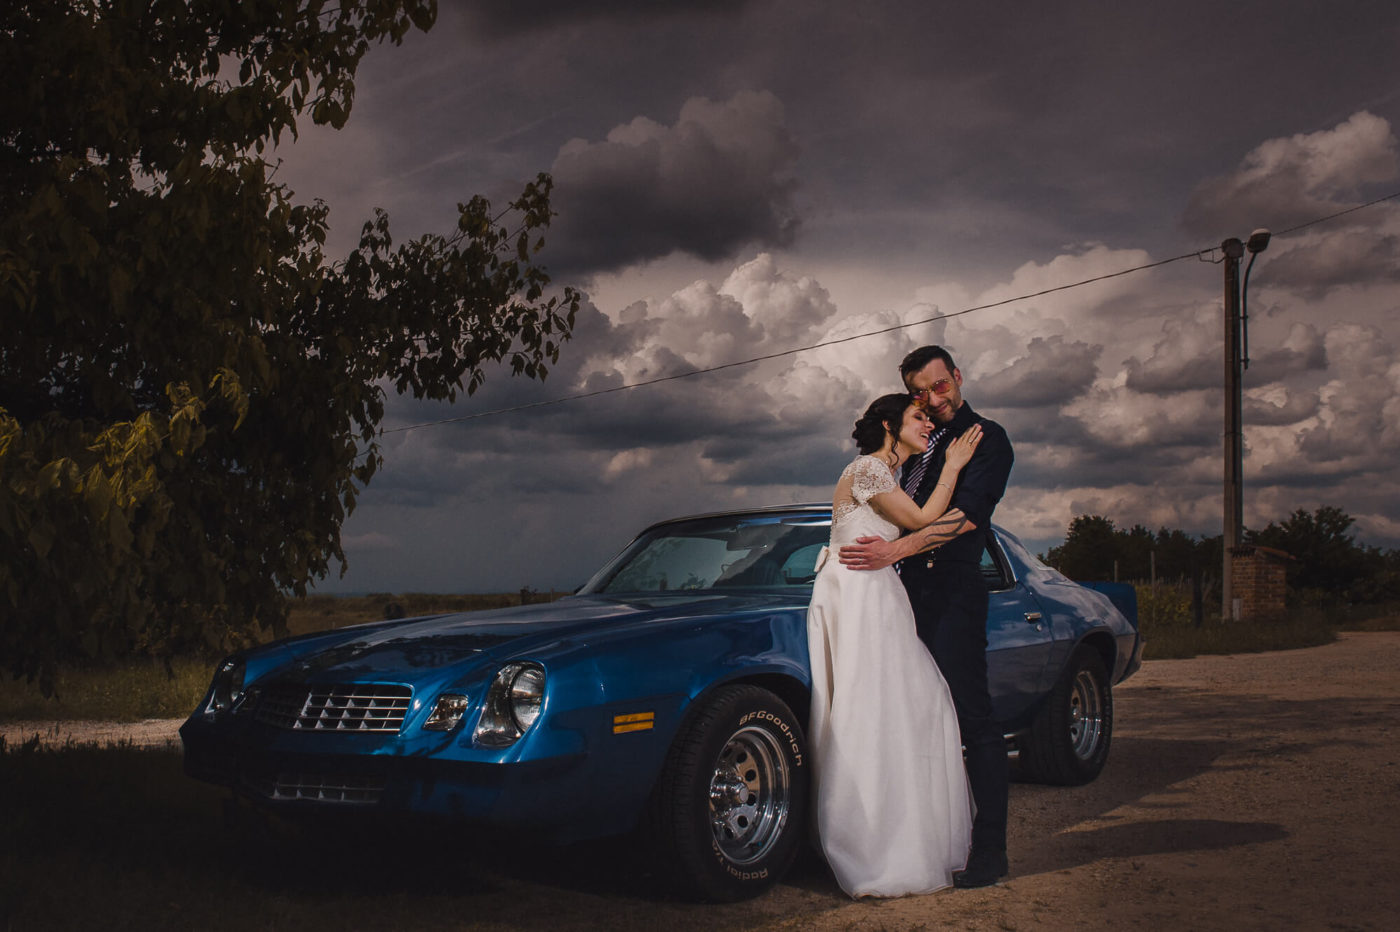 Fotografo di matrimonio Asti - sposi che si abbracciano vicino ad una Camaro blue nel giorno del loro matrimonio sotto un cielo tempestoso